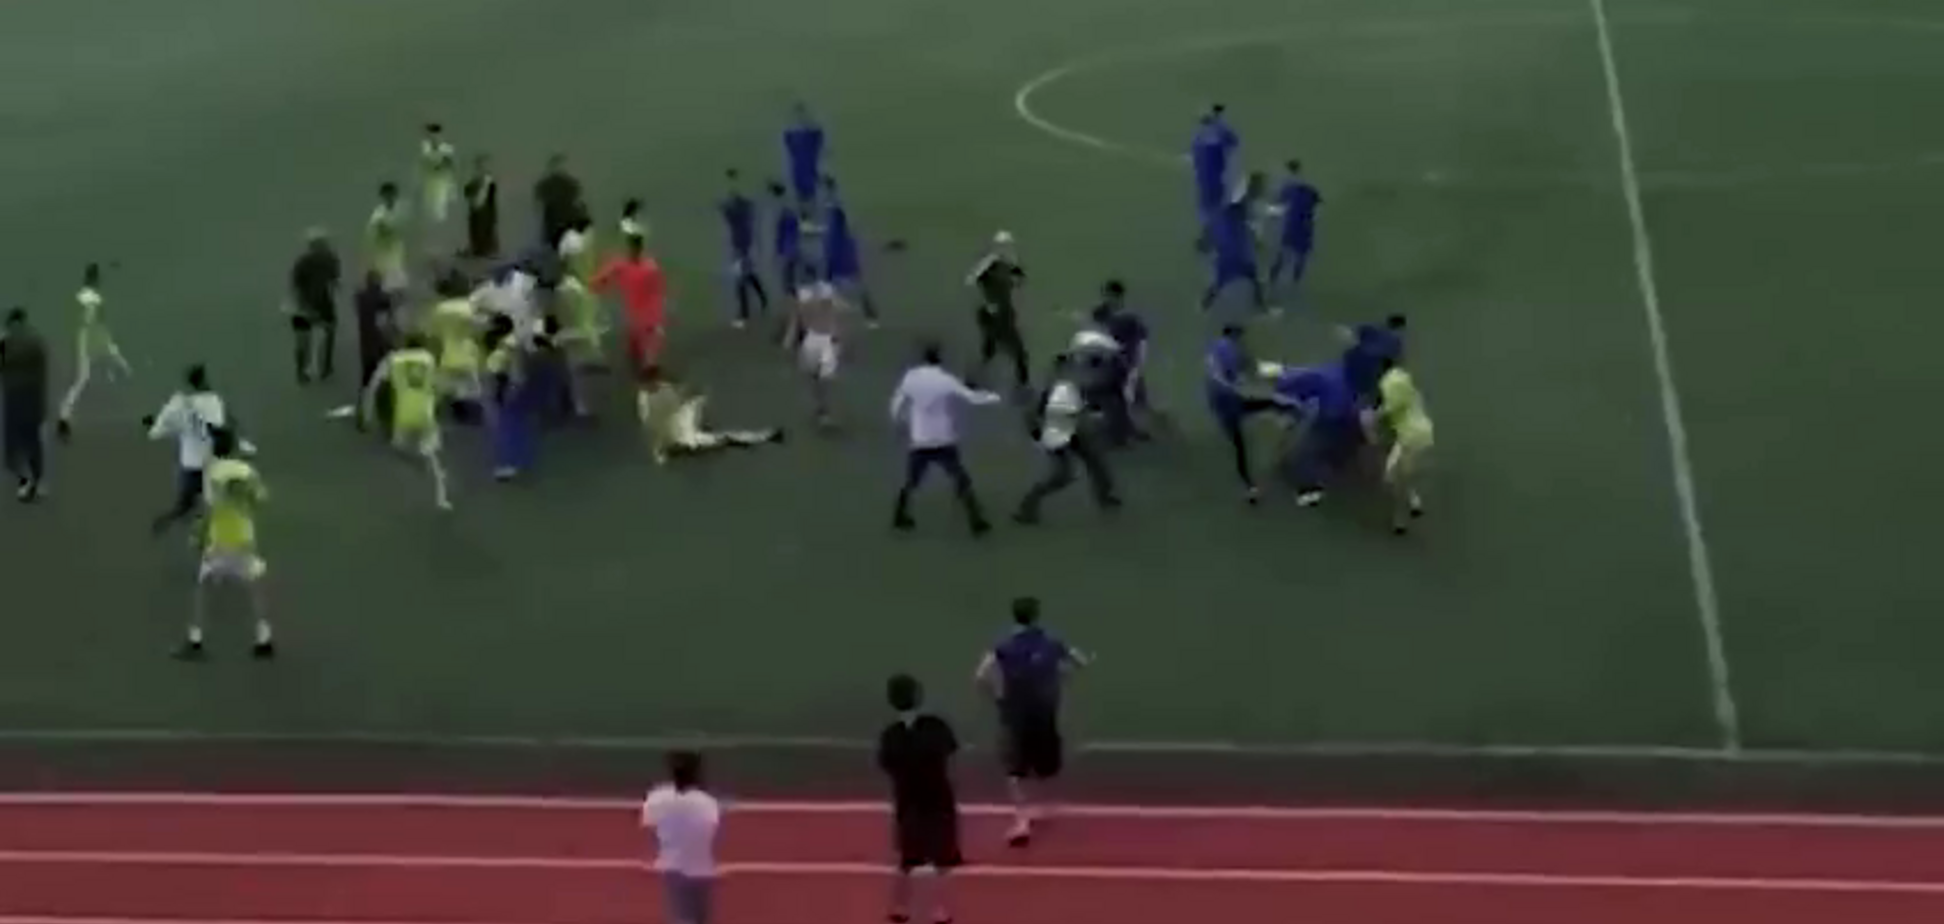 Дагестанський футболіст мерзенним вчинком спровокував масову бійку на матчі - відеофакт